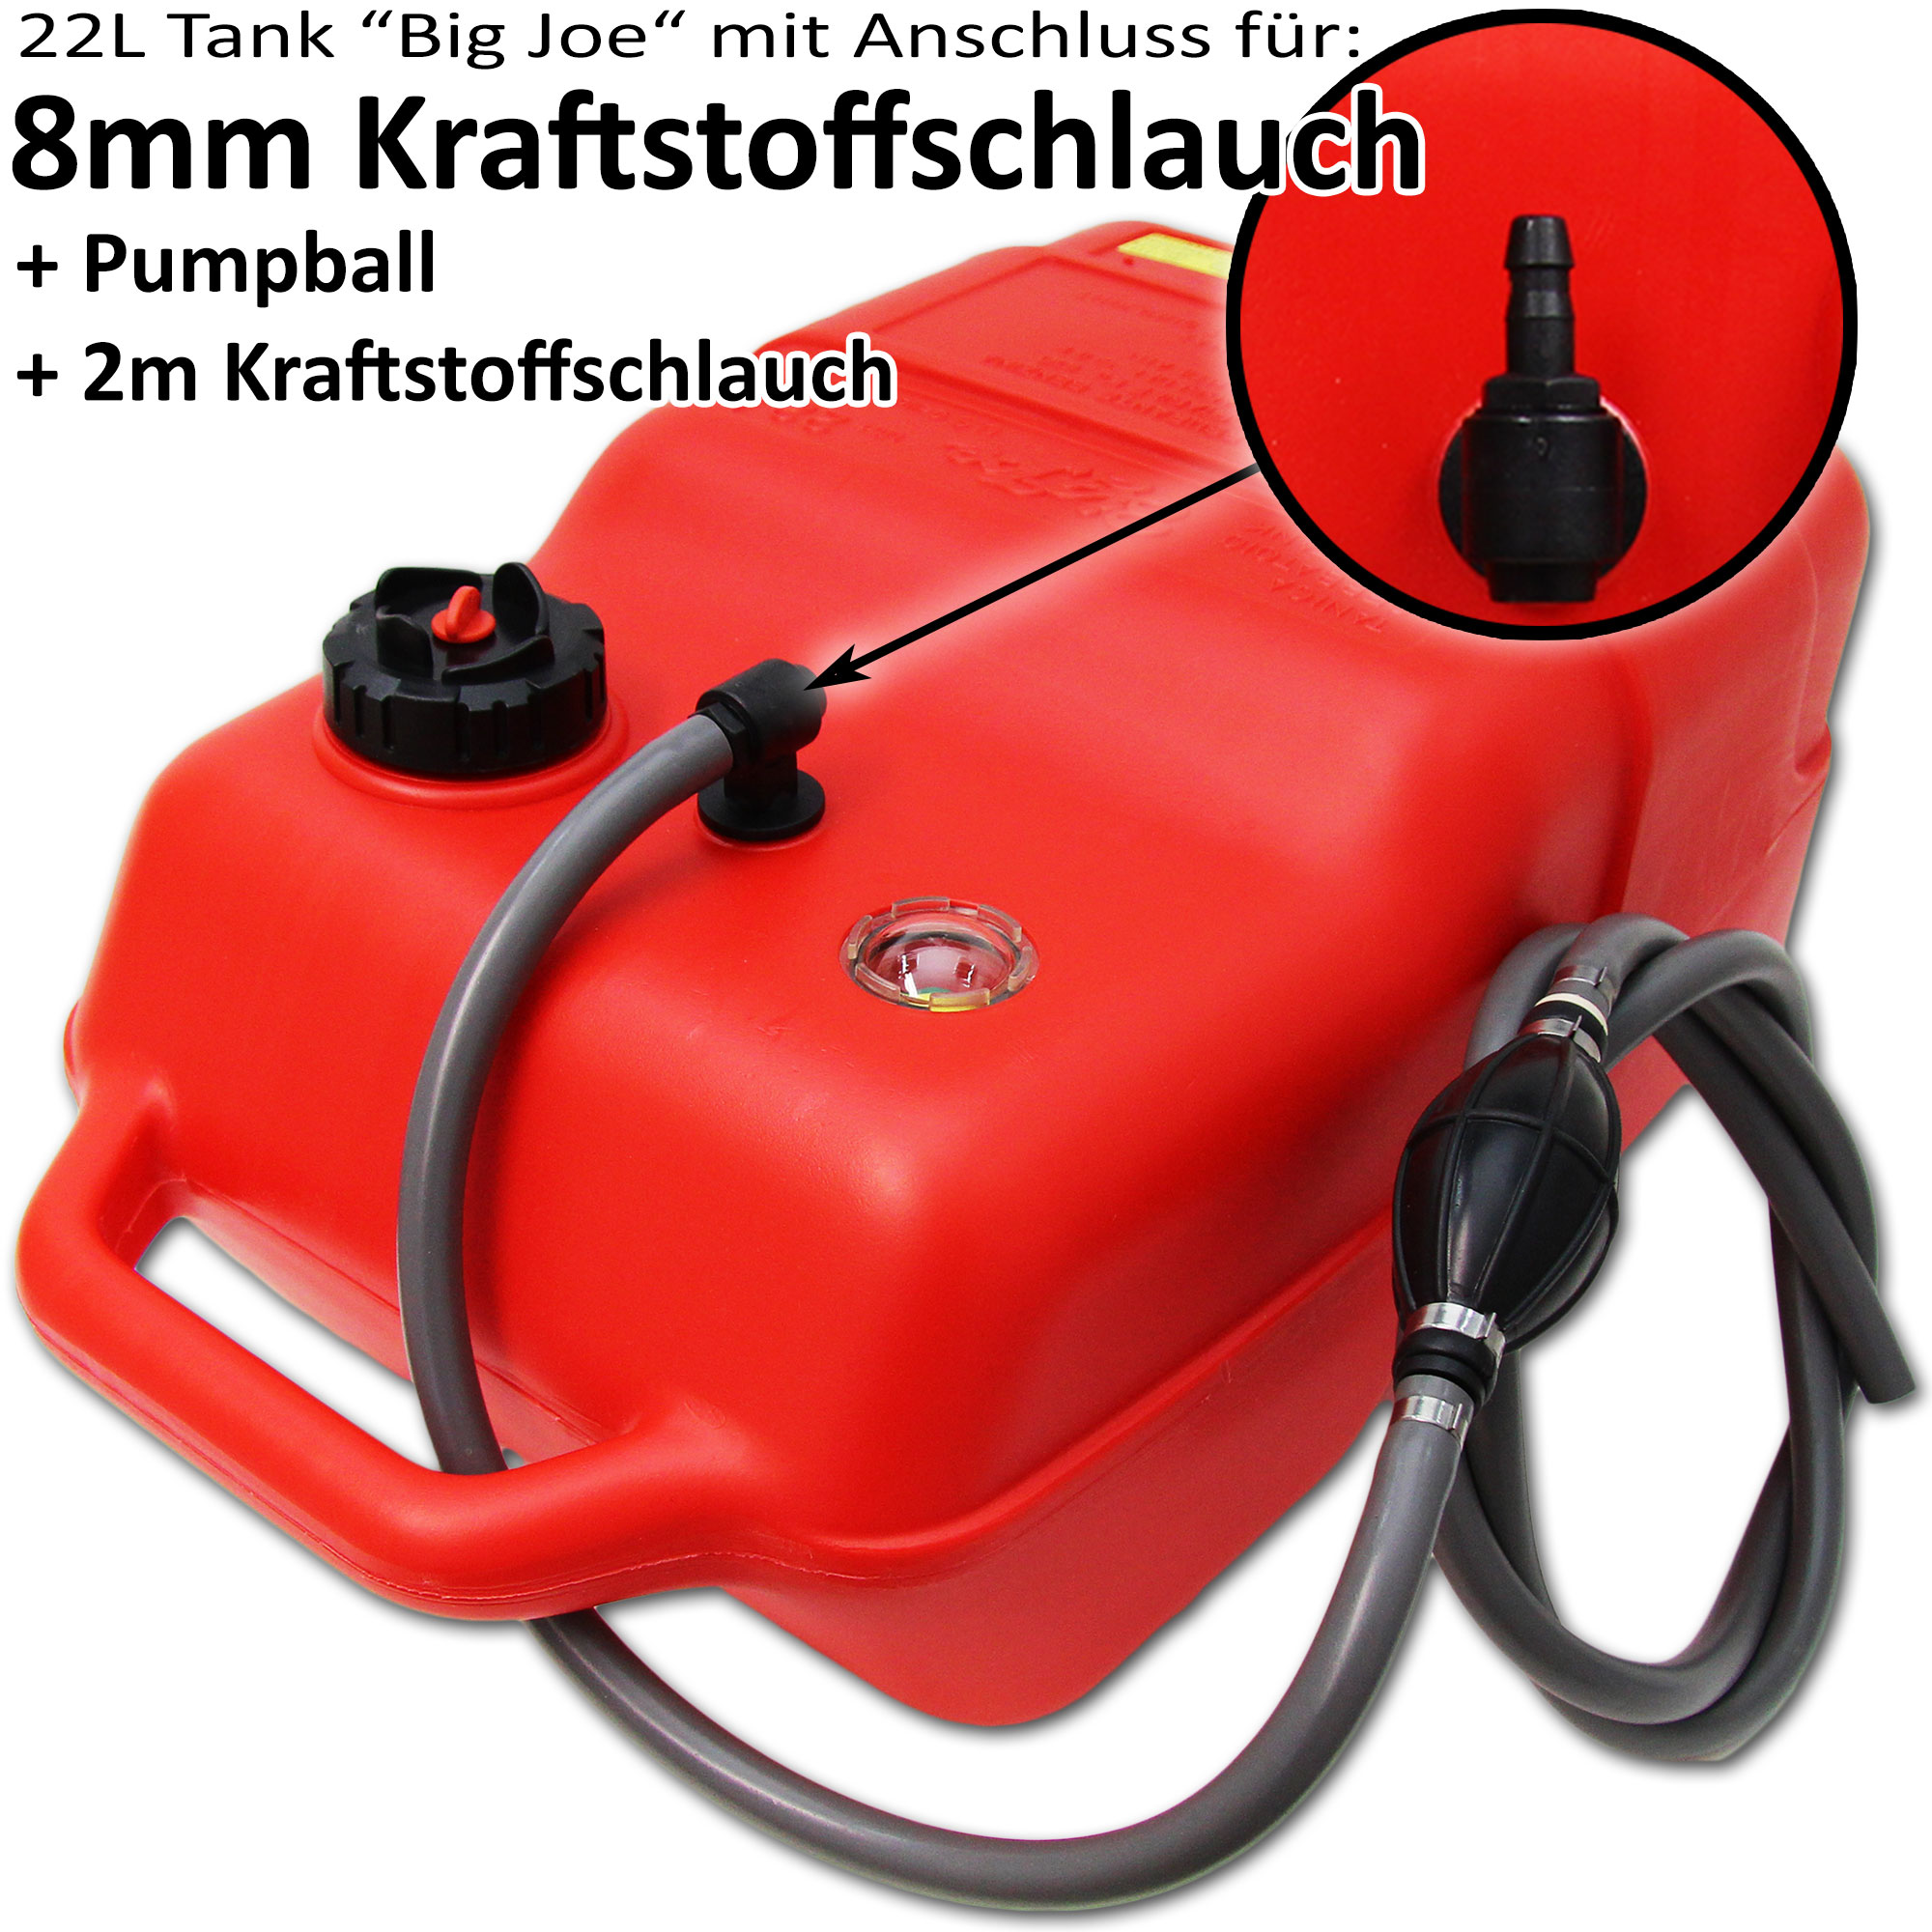 Kraftstofftank rot / Anschlussnippel (8mm) / 2m Schlauch / Füllstandsanzeige manuell